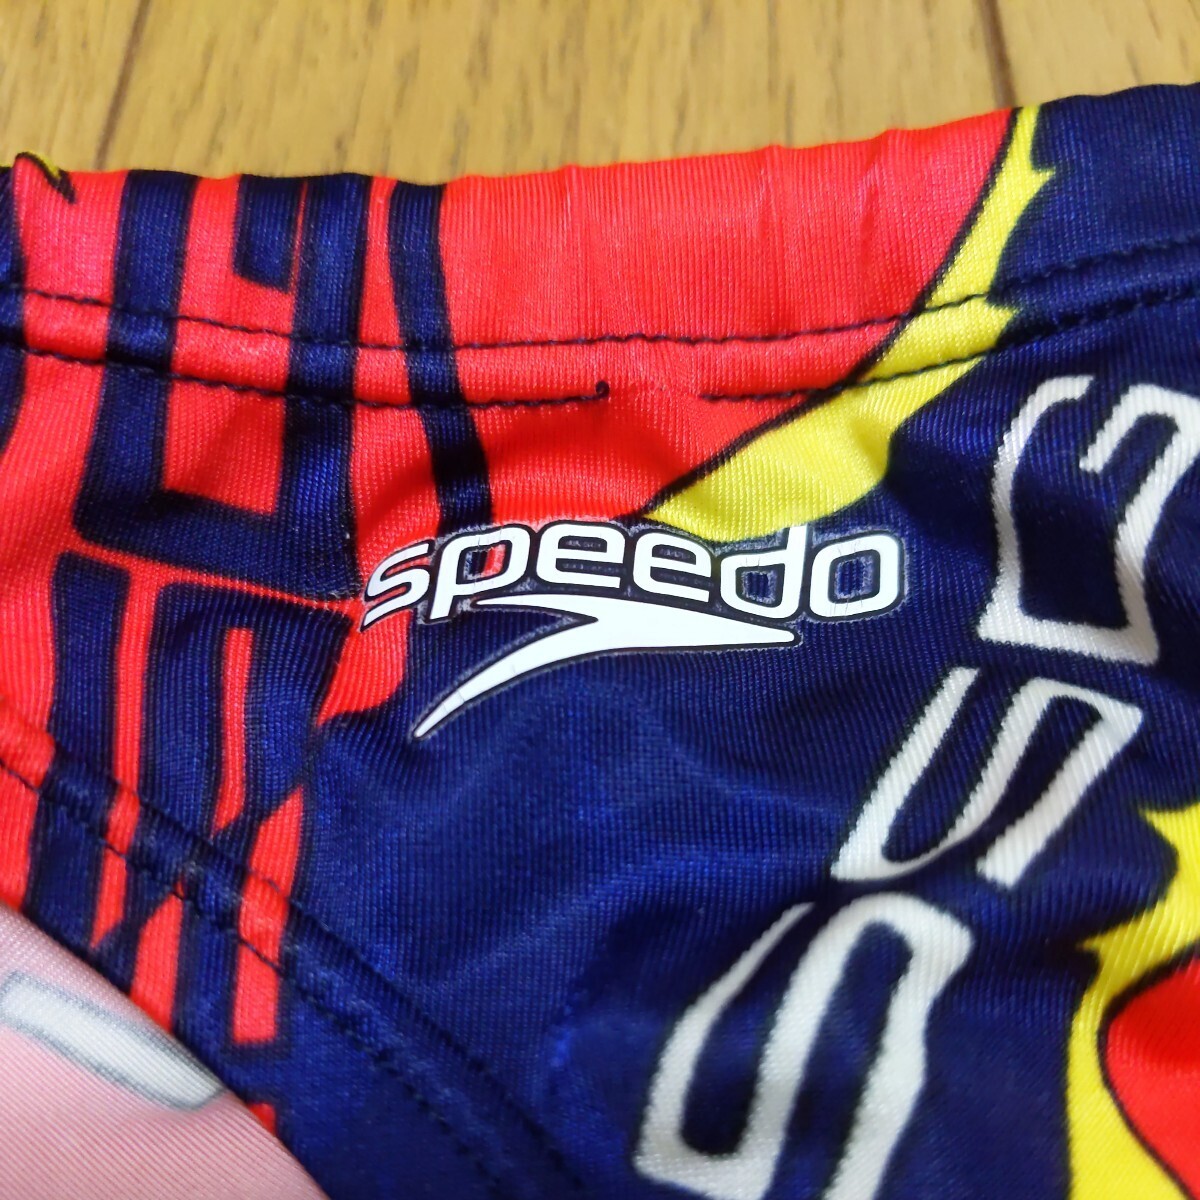 イトマンスイミングスクール ISSG アクアブレード 選手コース Mサイズ SPEEDO 競パン 競泳水着 スピード MIZUNO ミズノ ISSの画像2